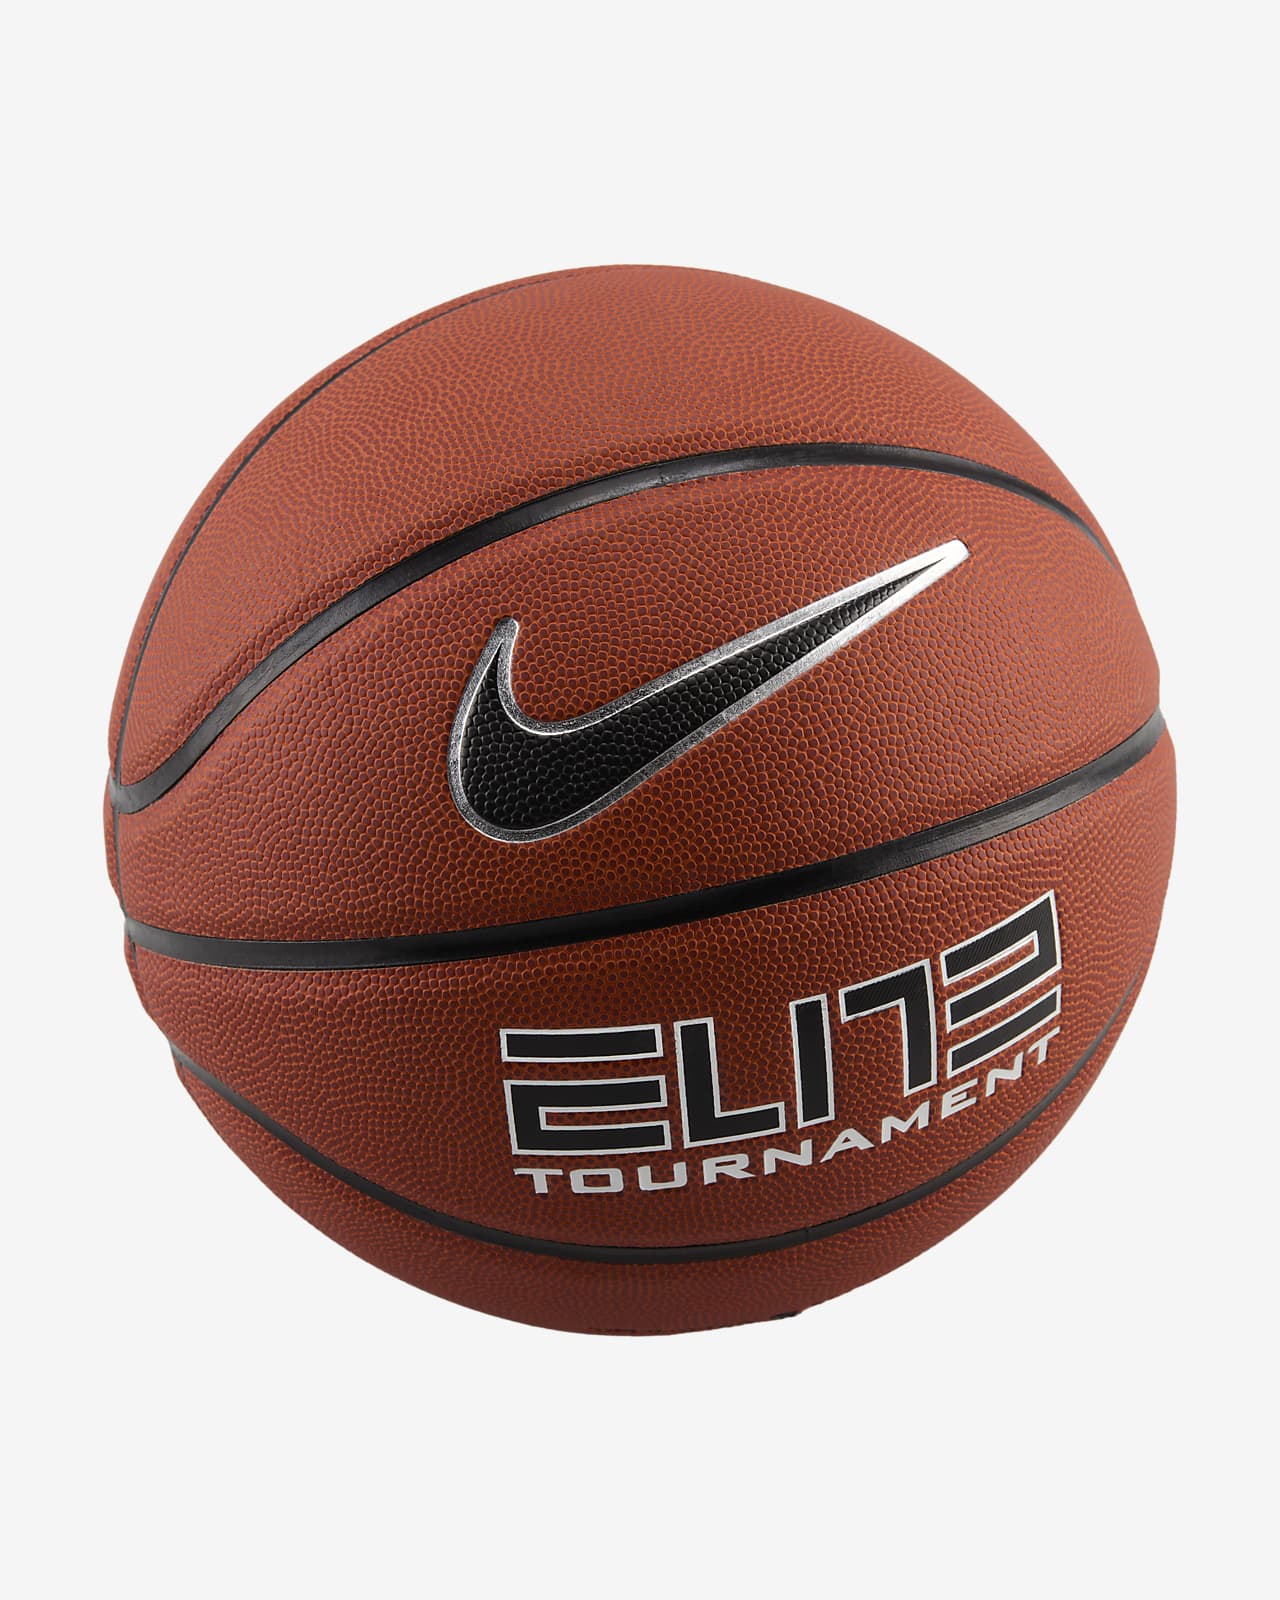 Basketboll Nike Elite Tournament med 8 paneler (ouppblåst)